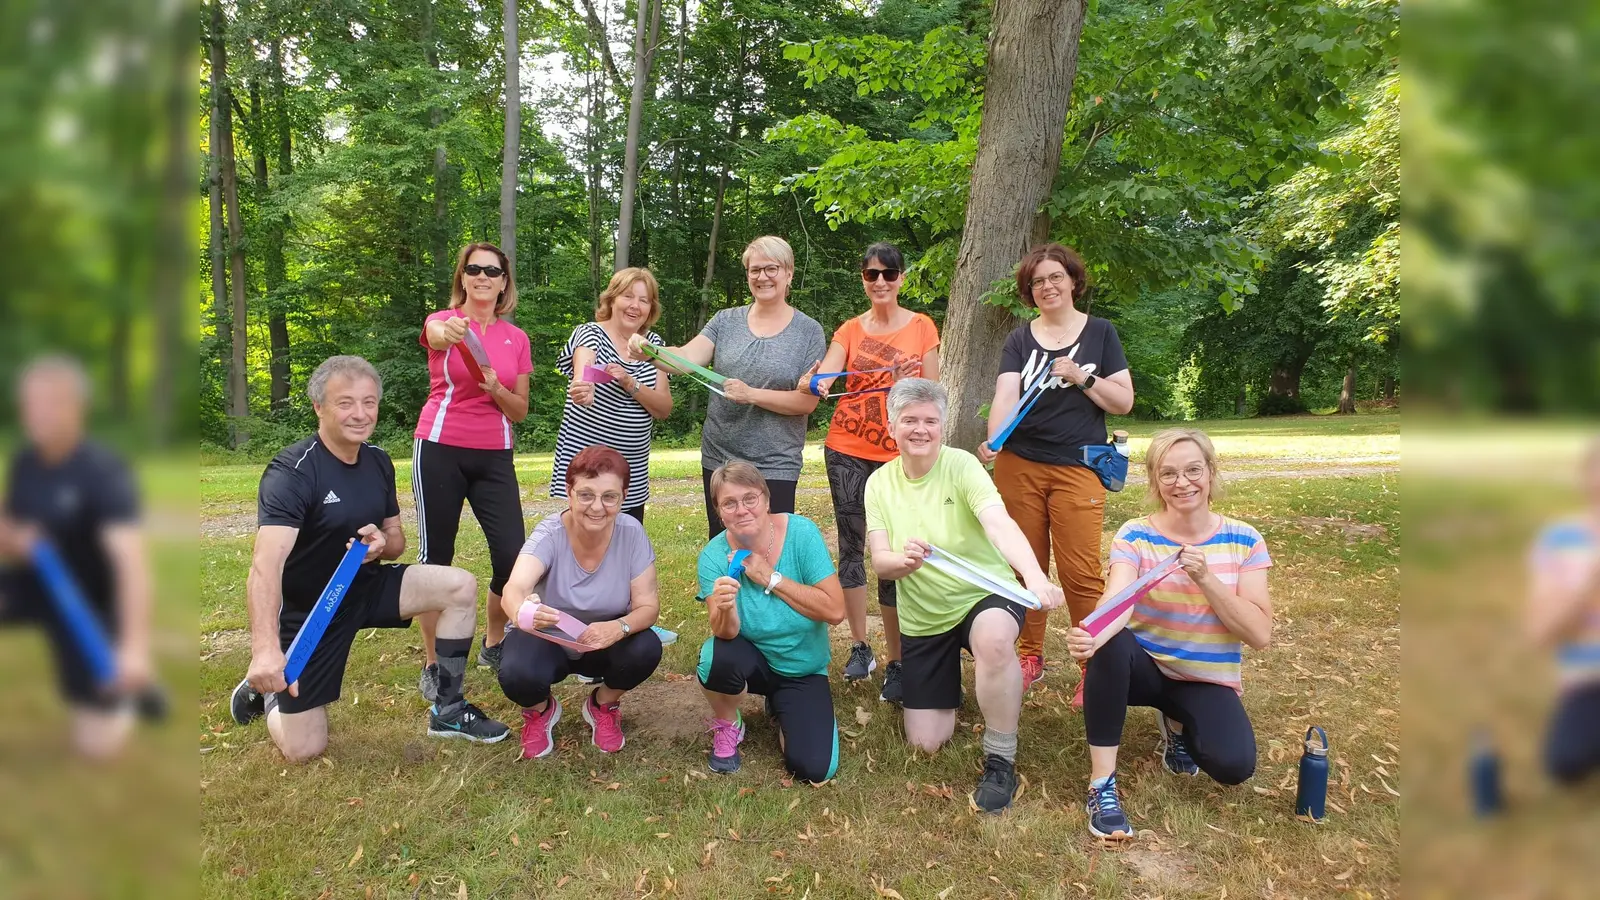 Die Outdoor Athletics Gruppe beim Training am Kaiserbrunnen in Brakel. (Foto: privat)